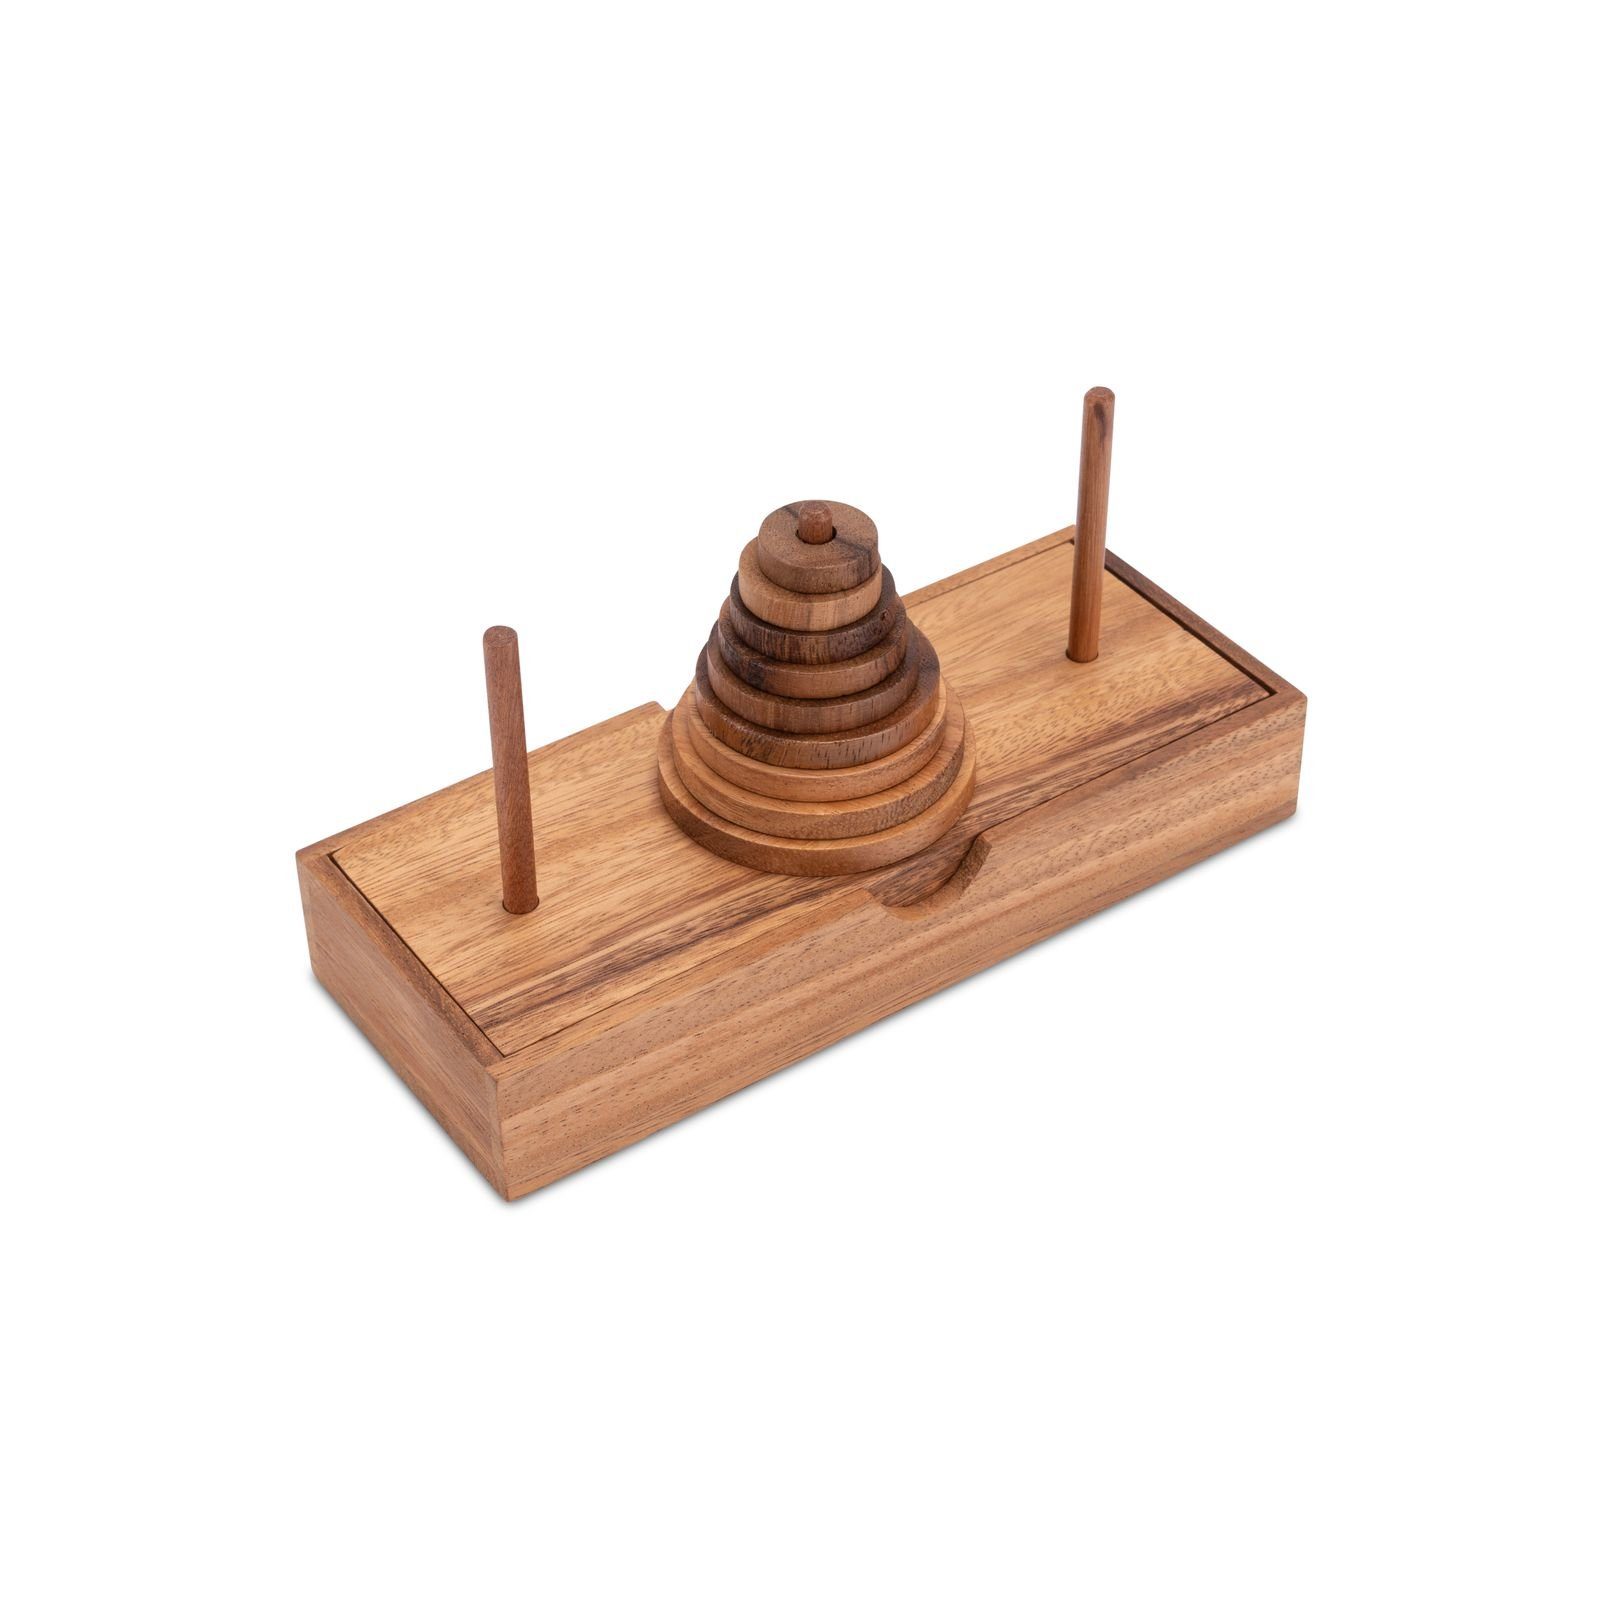 - - Holzspiele 9 Denkspiel - mit Logoplay Hanoi Pagoda Turm Logikspiel Spiel, von HolzscheibenHolzspielzeug